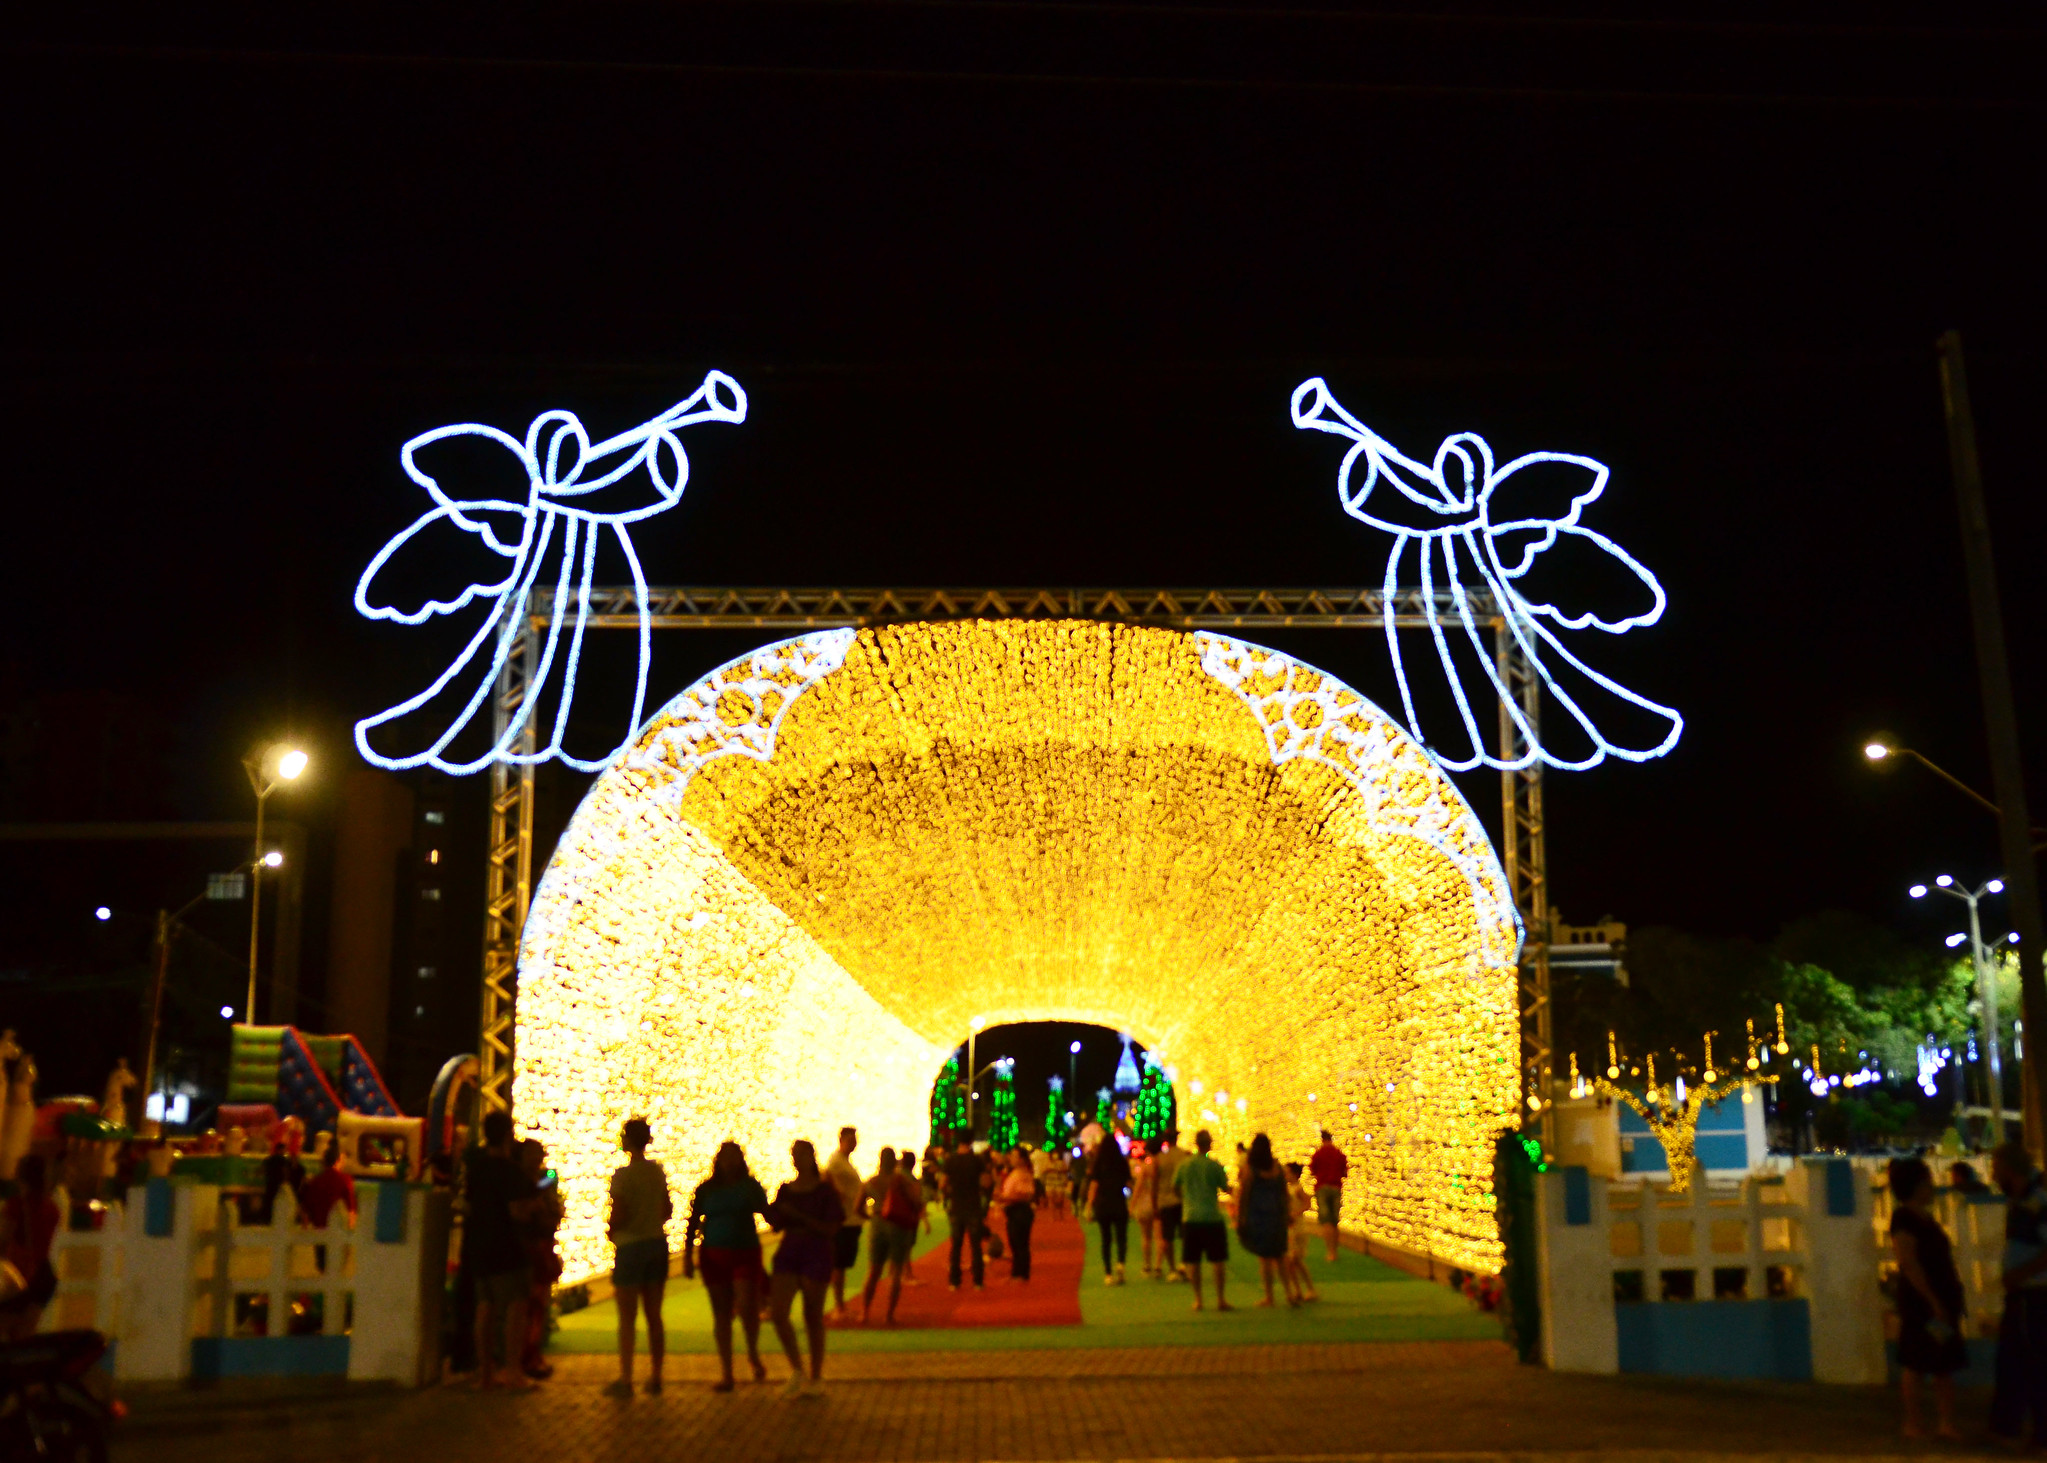 Prefeitura de Mossoró - “Estação Natal” ilumina Mossoró em projeto inovador  idealizado pela Prefeitura